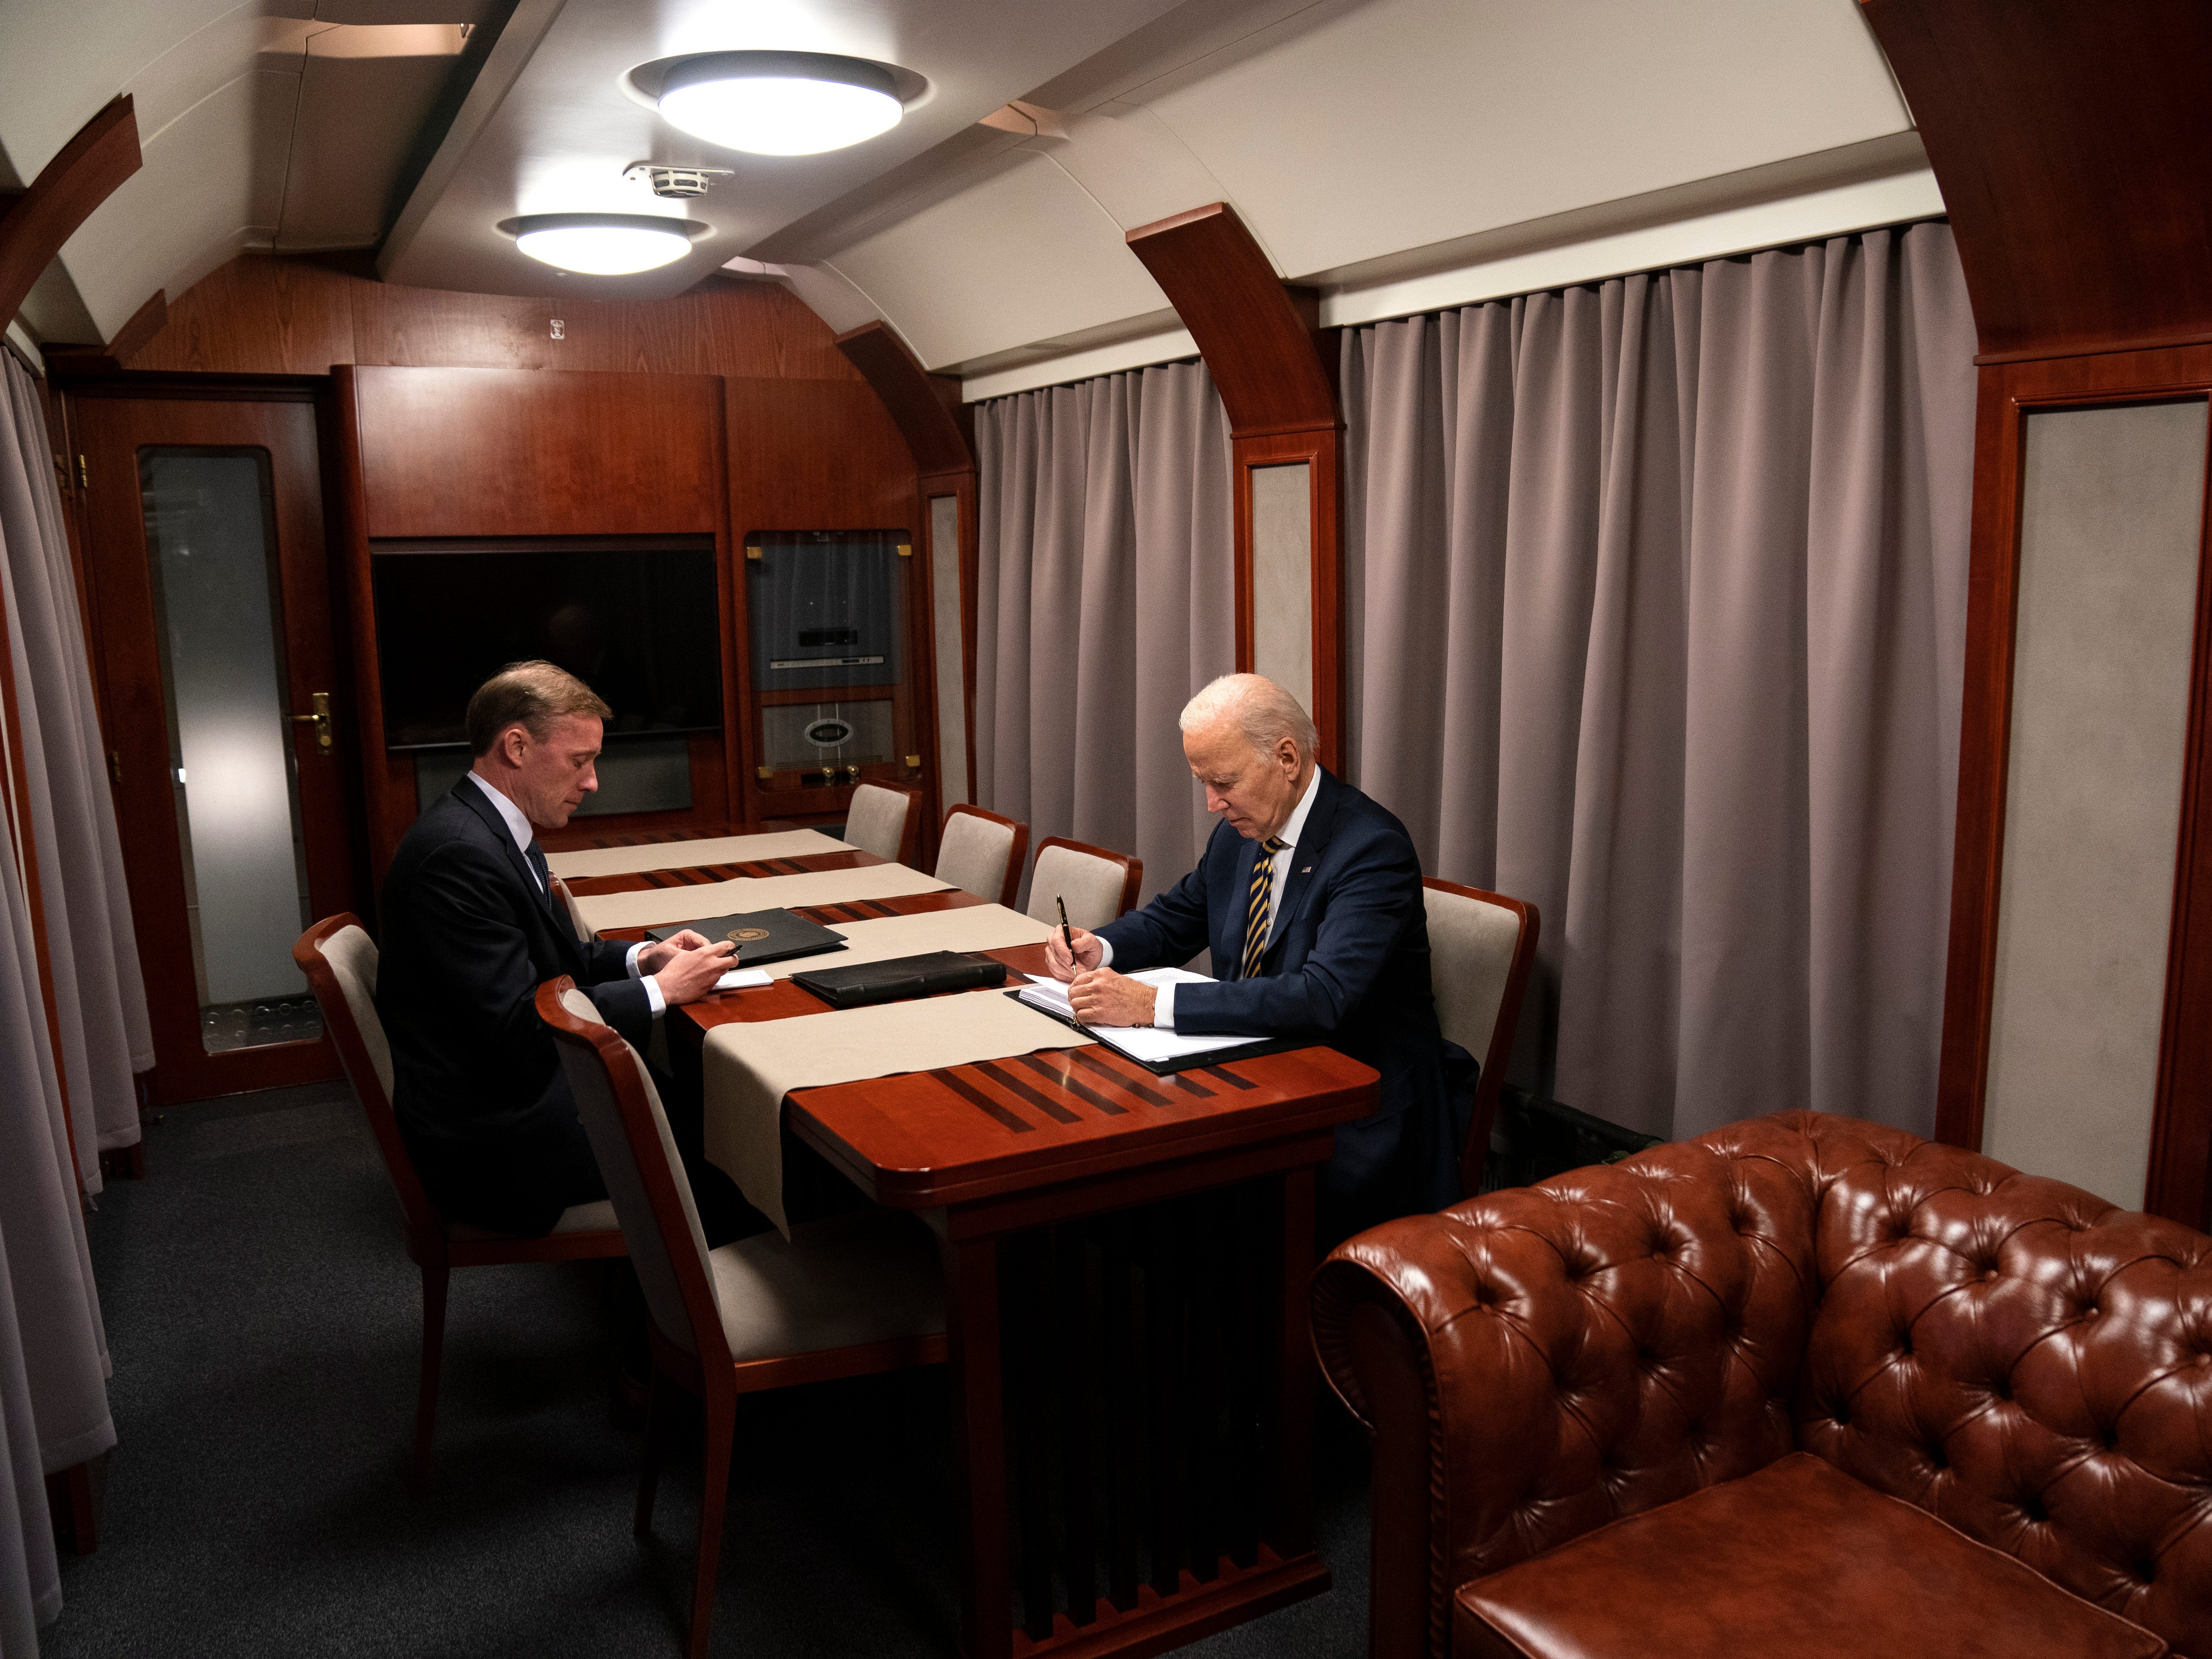 Präsident Joe Biden sitzt nach einem Überraschungsbesuch beim ukrainischen Präsidenten Wolodymyr Selenskyj in Kiew mit dem Nationalen Sicherheitsberater Jake Sullivan in einem Zug